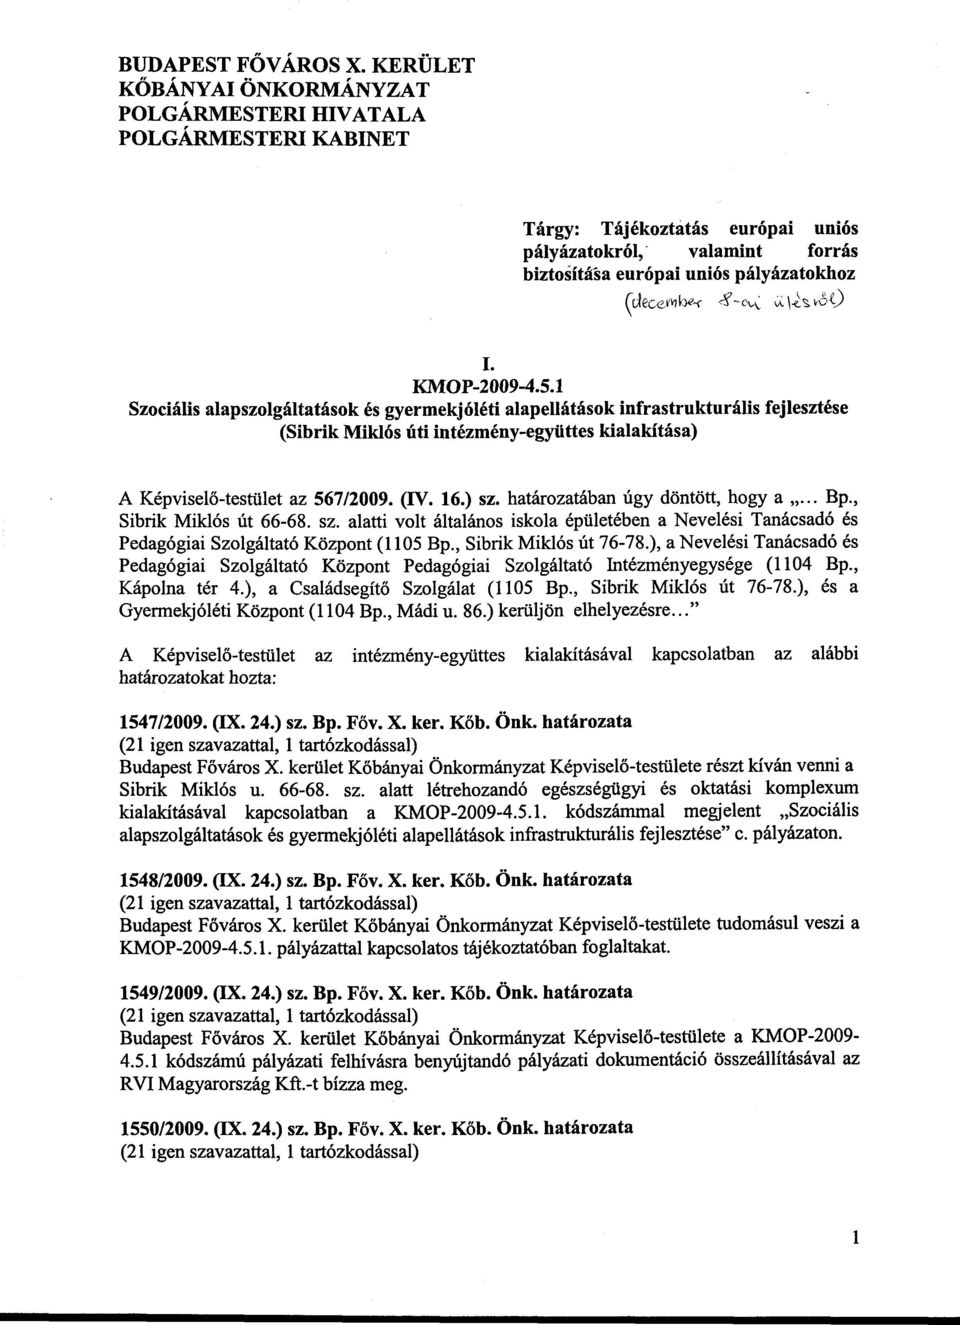 1 Szociális alapszolgáltatások és gyermekjóléti alapellátások infrastrukturális fejlesztése (Sibrik Miklós úti intézmény-együttes kialakítása) w A Képviselő-testület az 567/2009. (IV. 16.) sz.